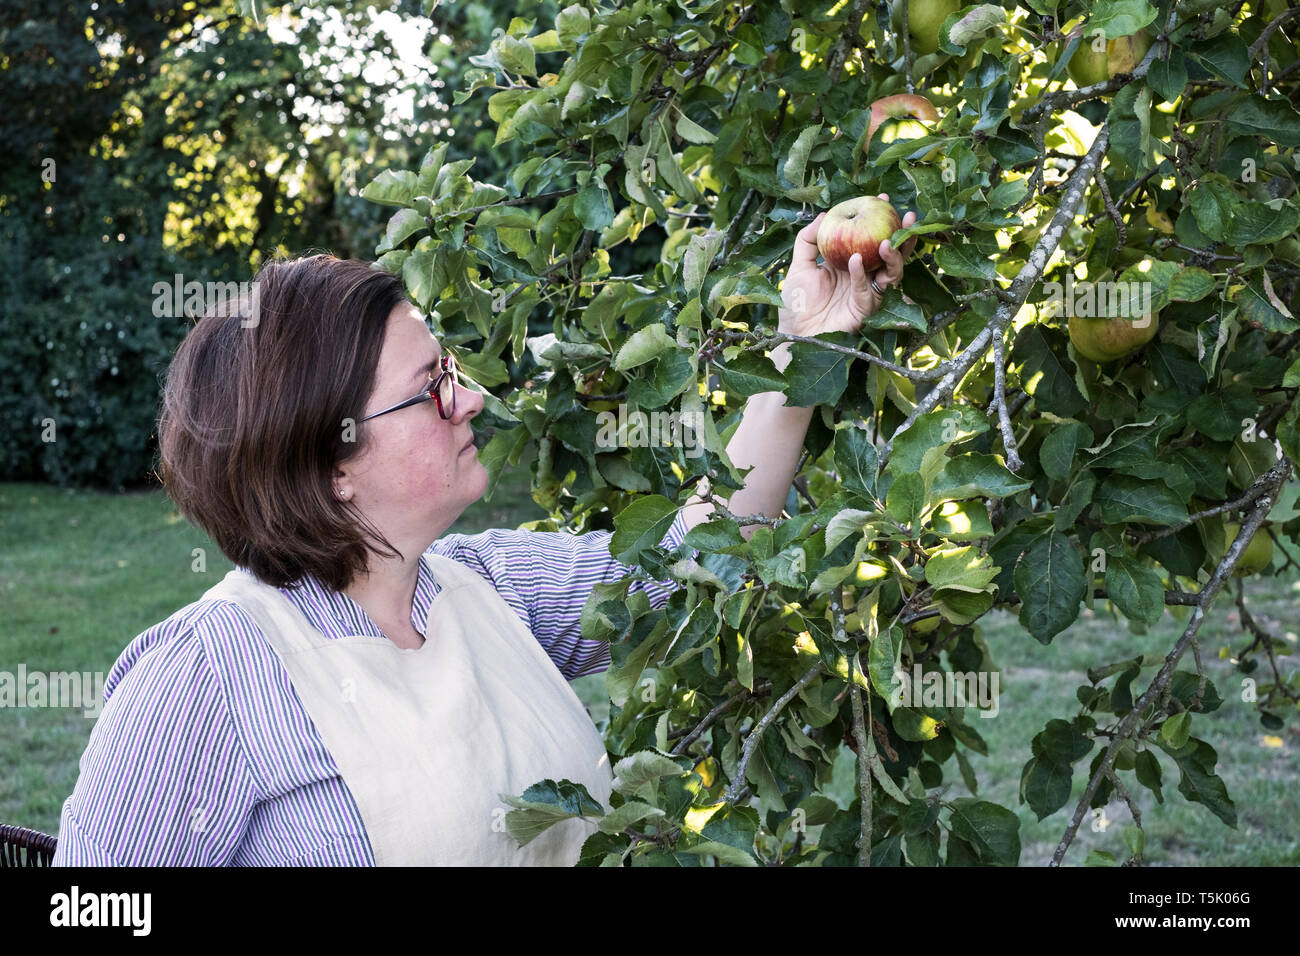 Frau mit Schürze und Gläser die Ernte roter und grüner Apfel von einem Baum. Stockfoto